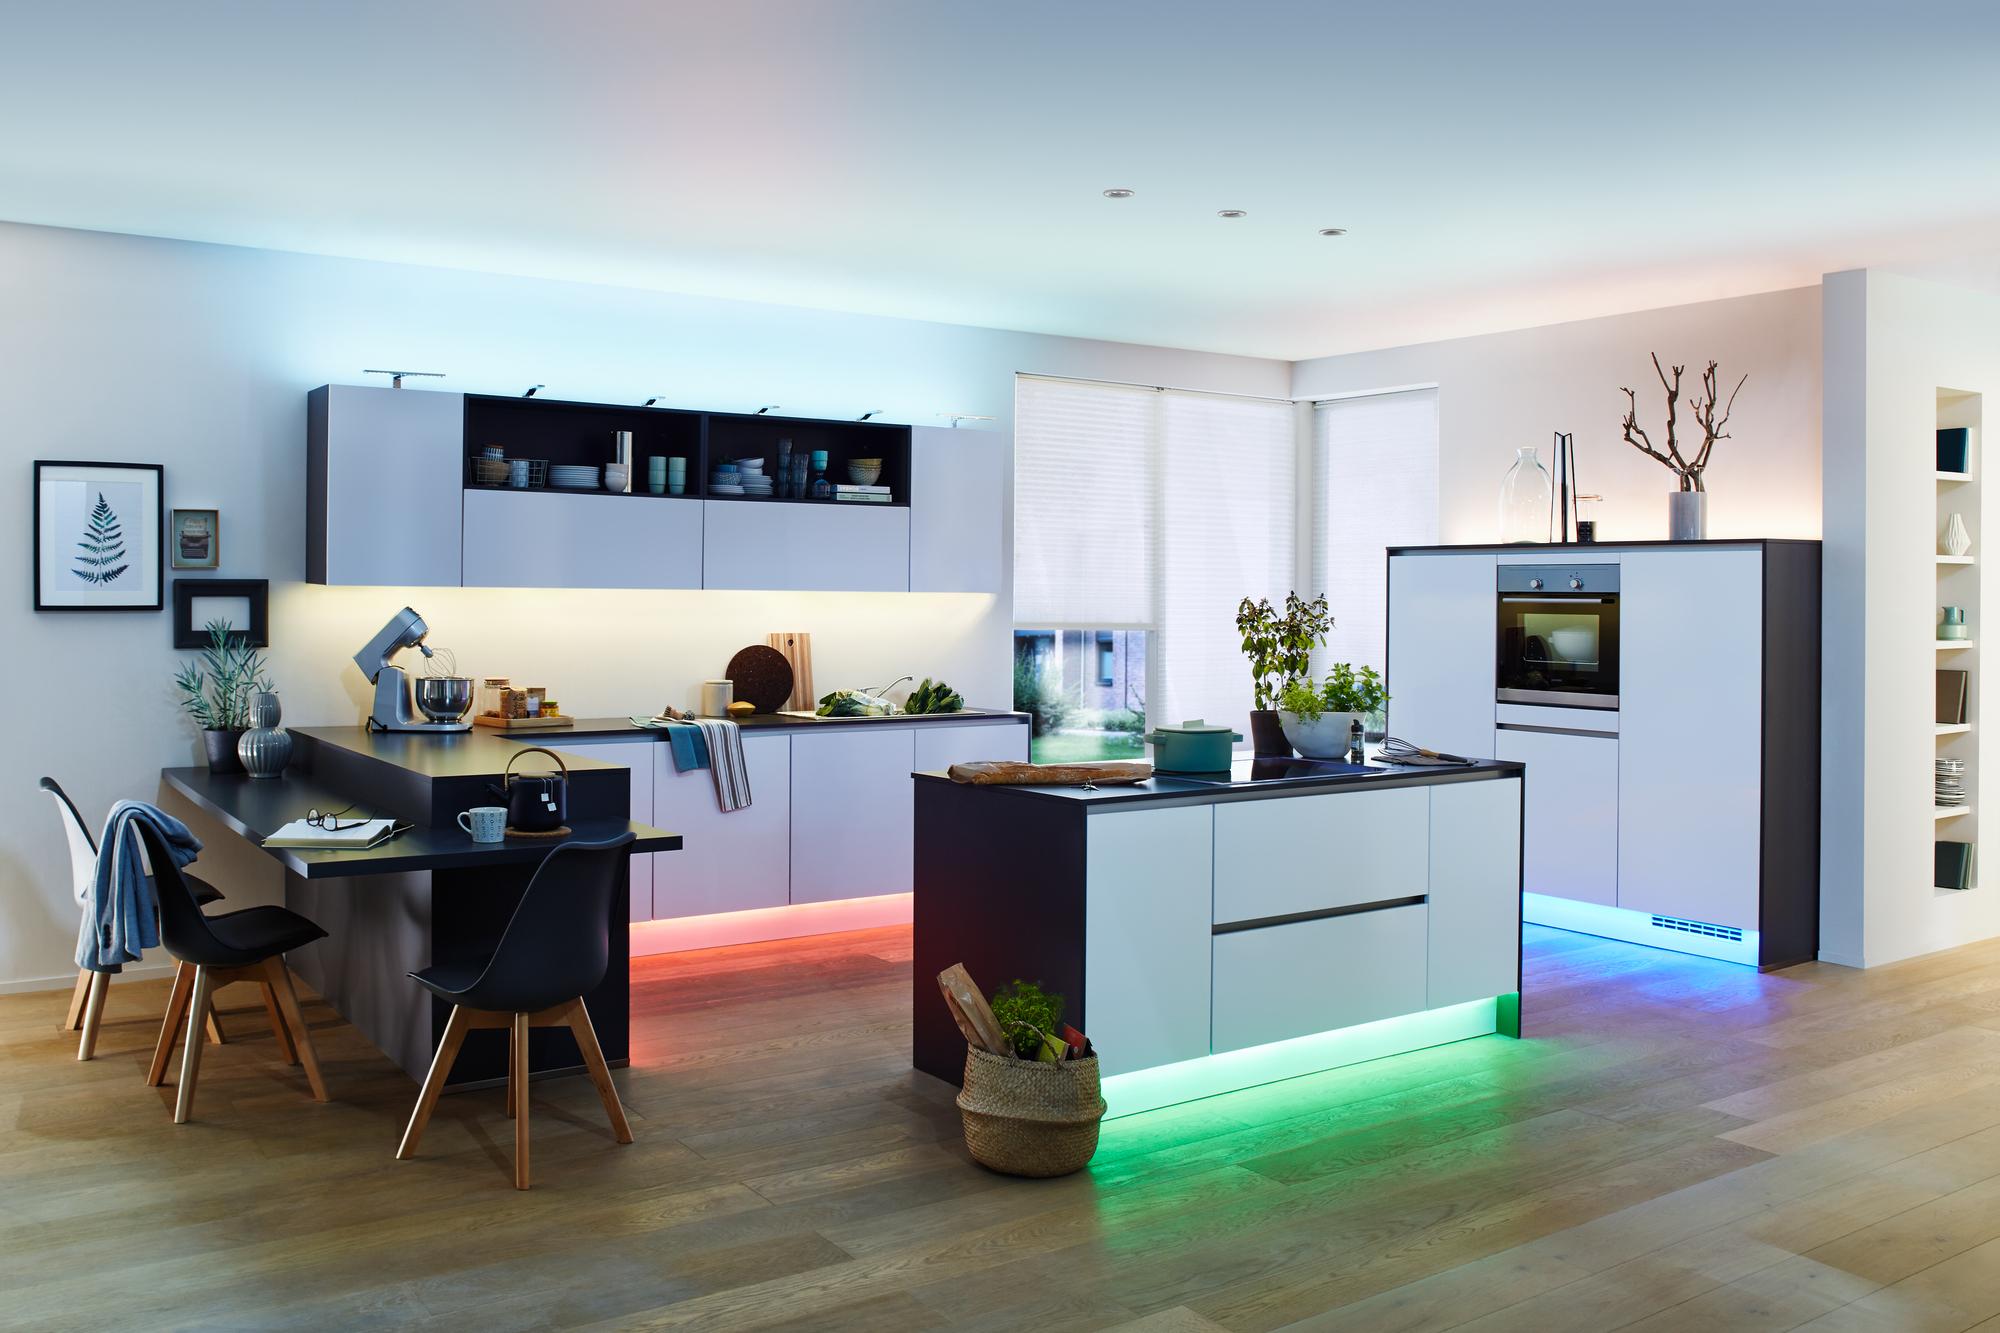 Küche mit direkten und indirekten Beleuchtungsquellen #küche #beleuchtung #indirektebeleuchtung #küchenbeleuchtung ©Paulmann Licht GmbH